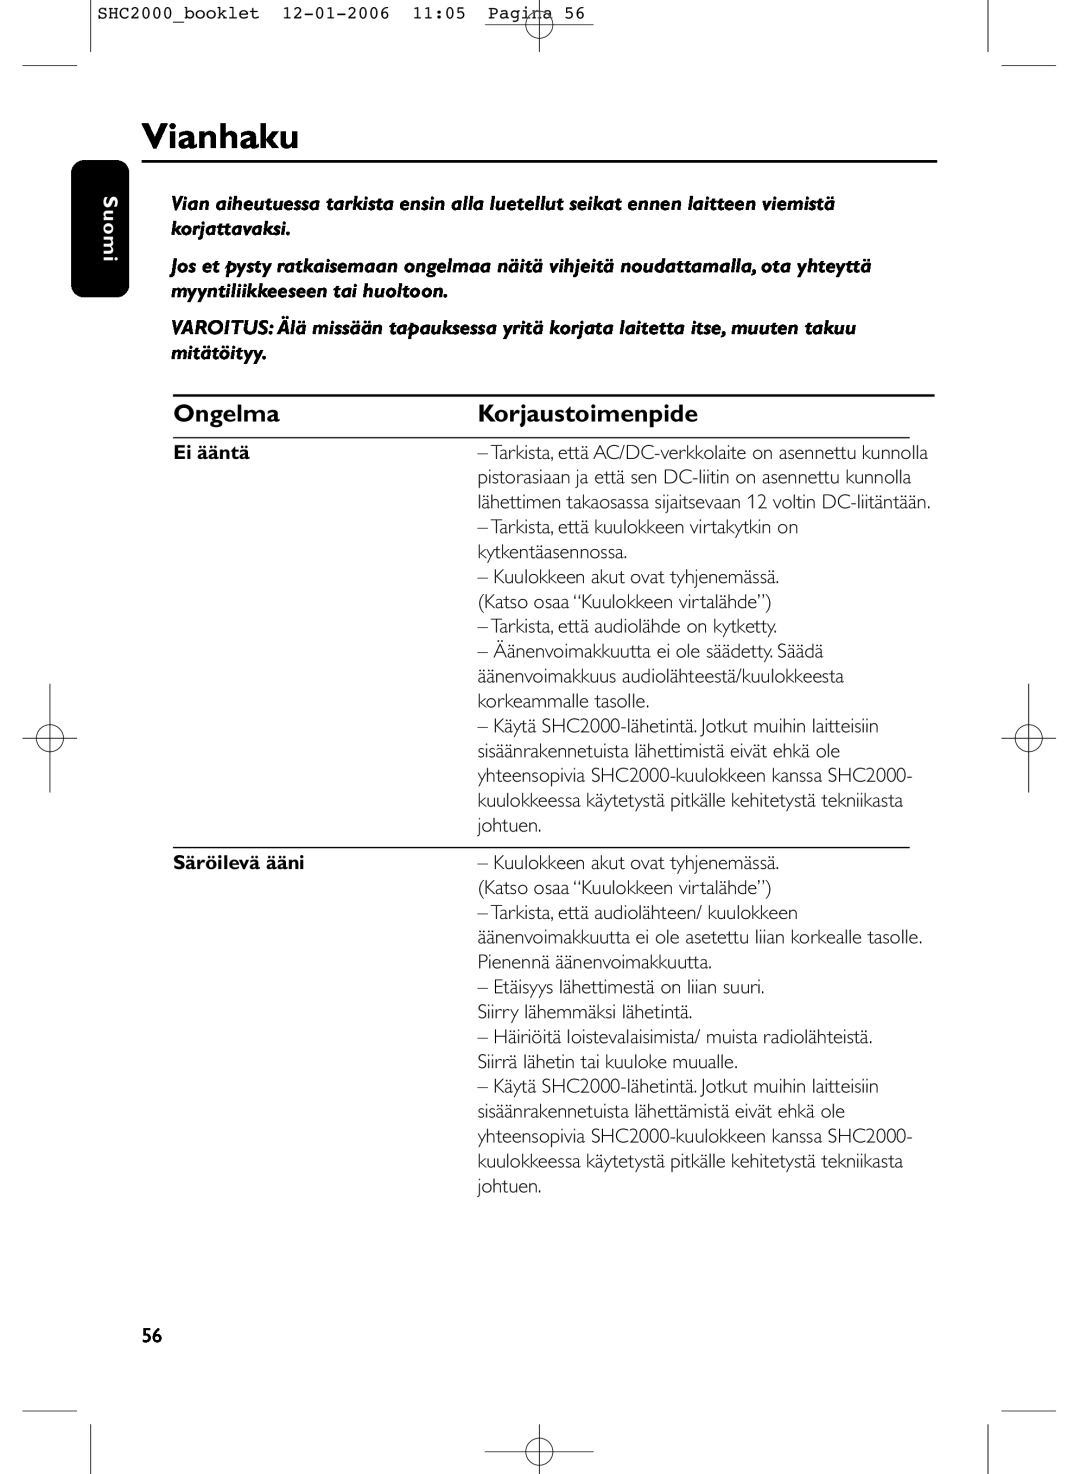 Philips SHC2000 manual Vianhaku, Ongelma, Korjaustoimenpide, Suomi, Ei ääntä, Säröilevä ääni 